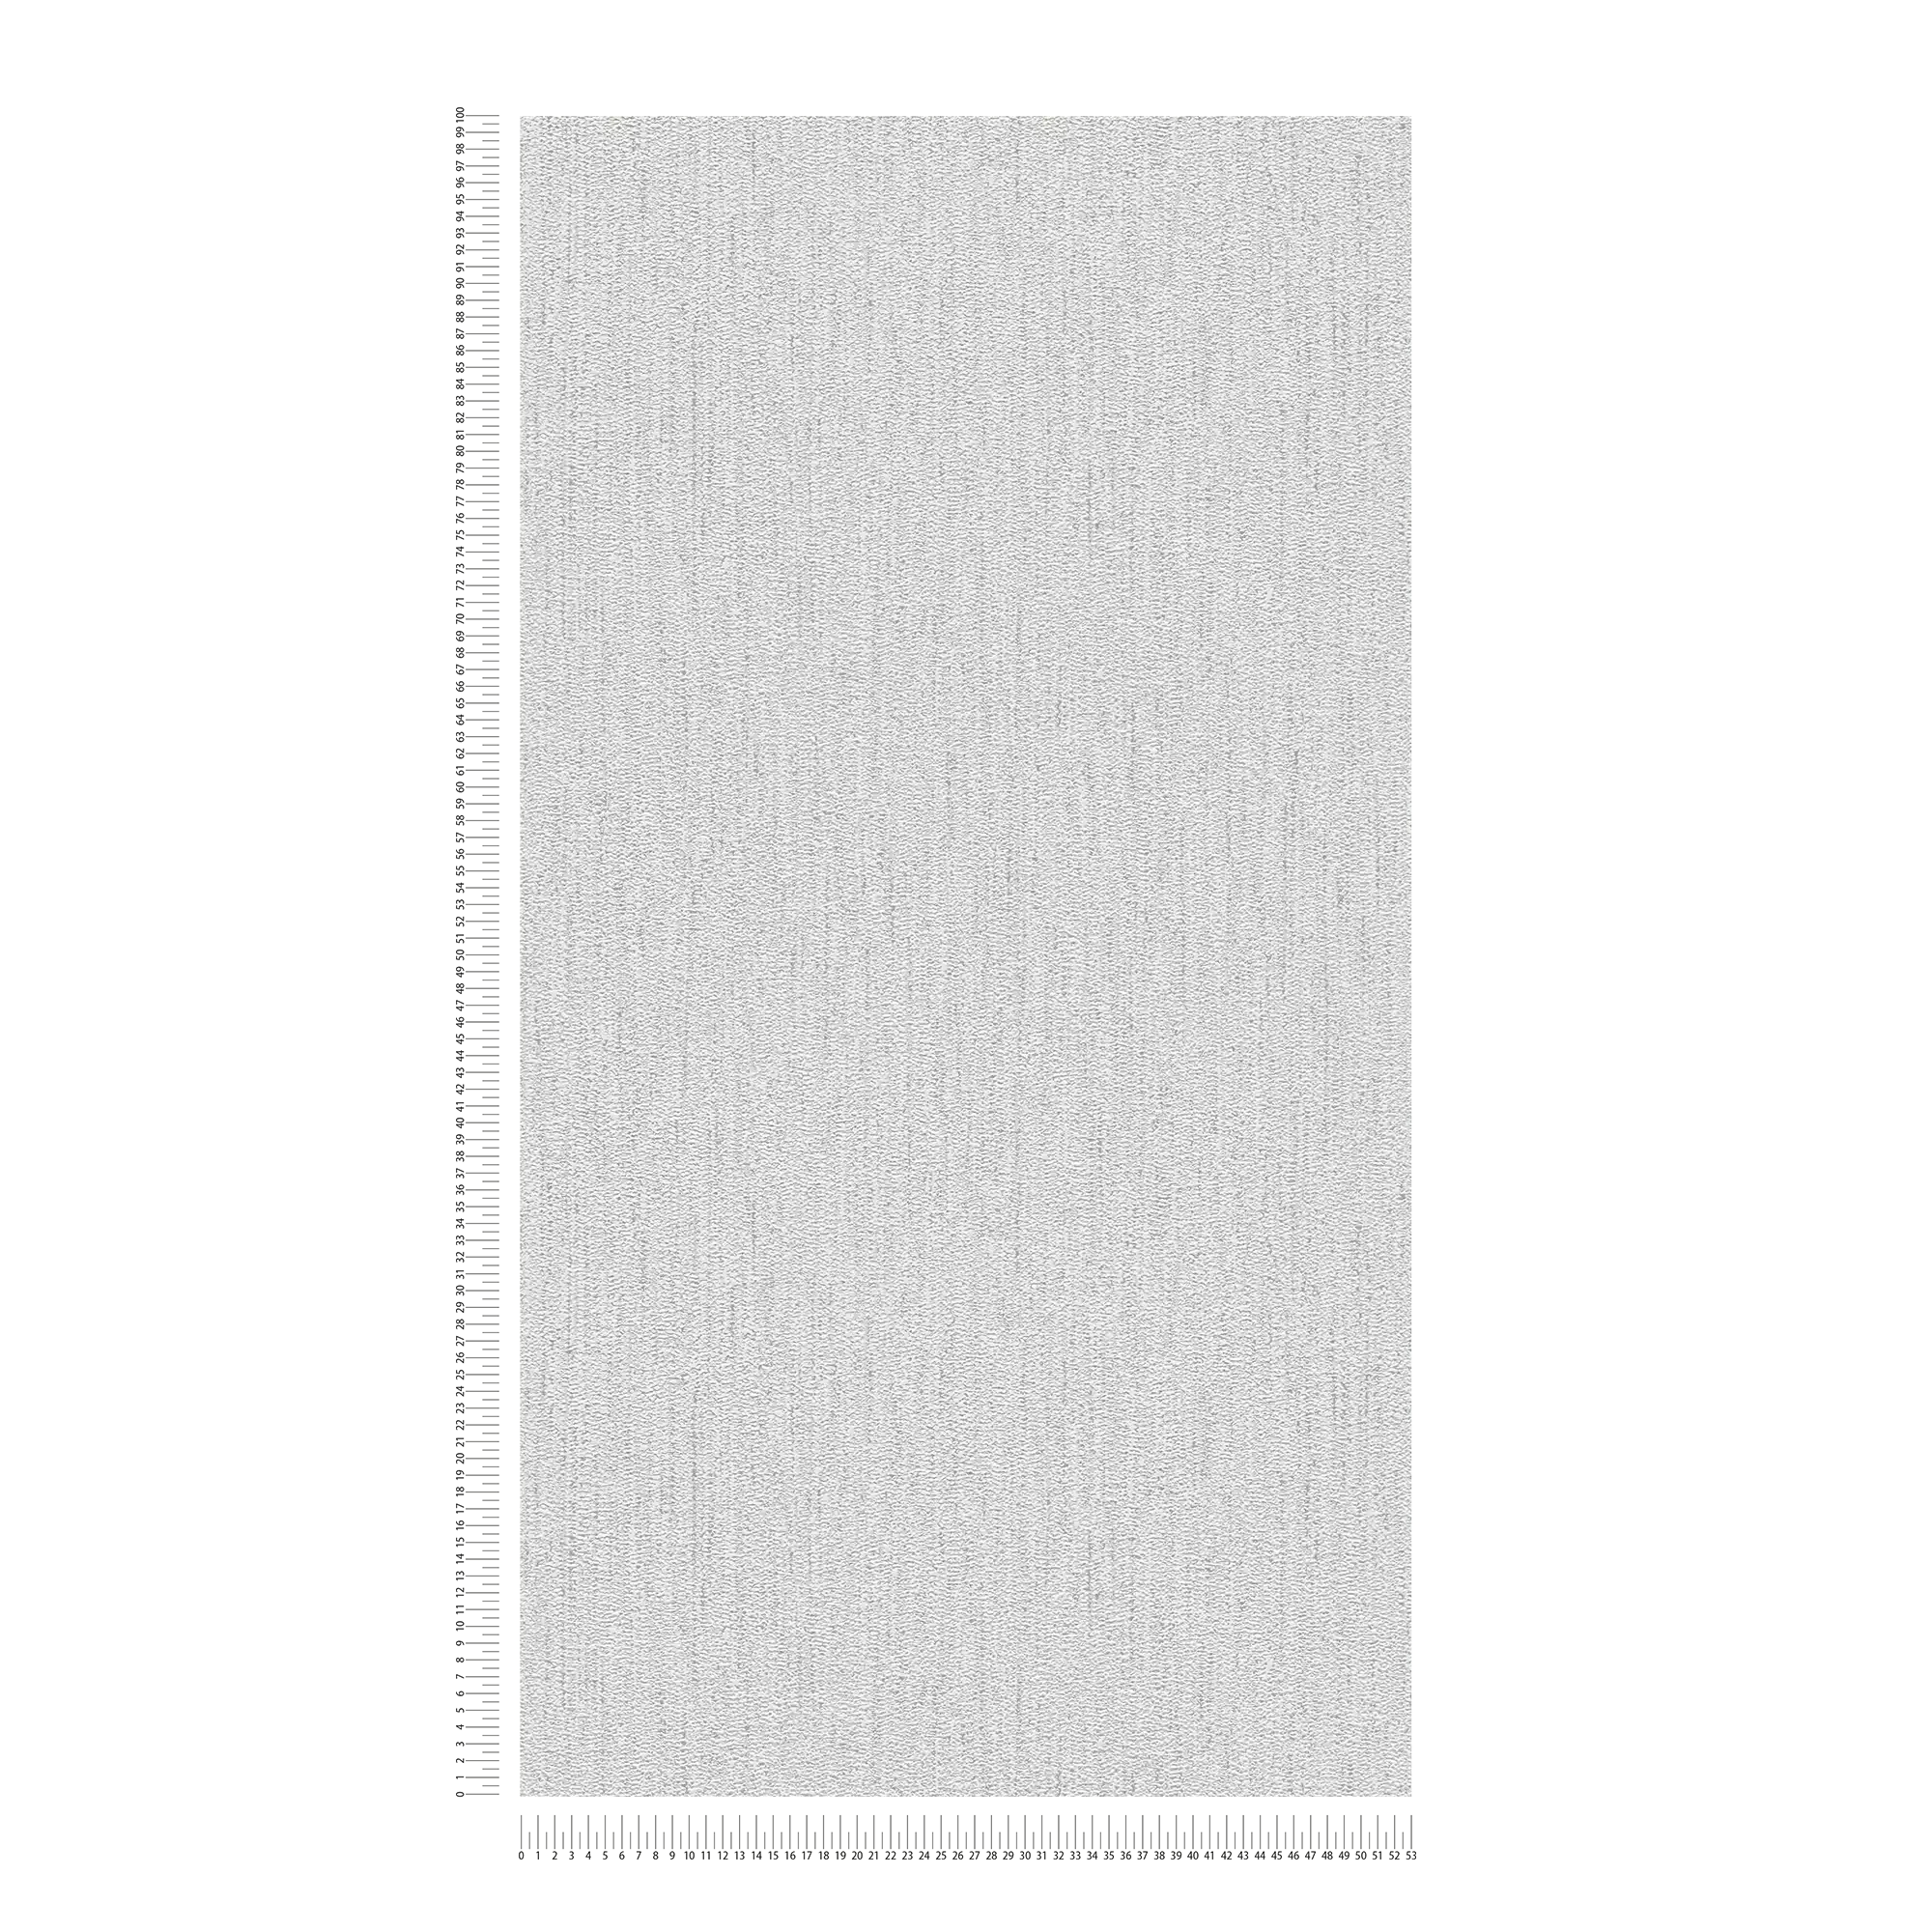             Strukturierte Tapete mit Gewebemuster – Hellgrau, Silber
        